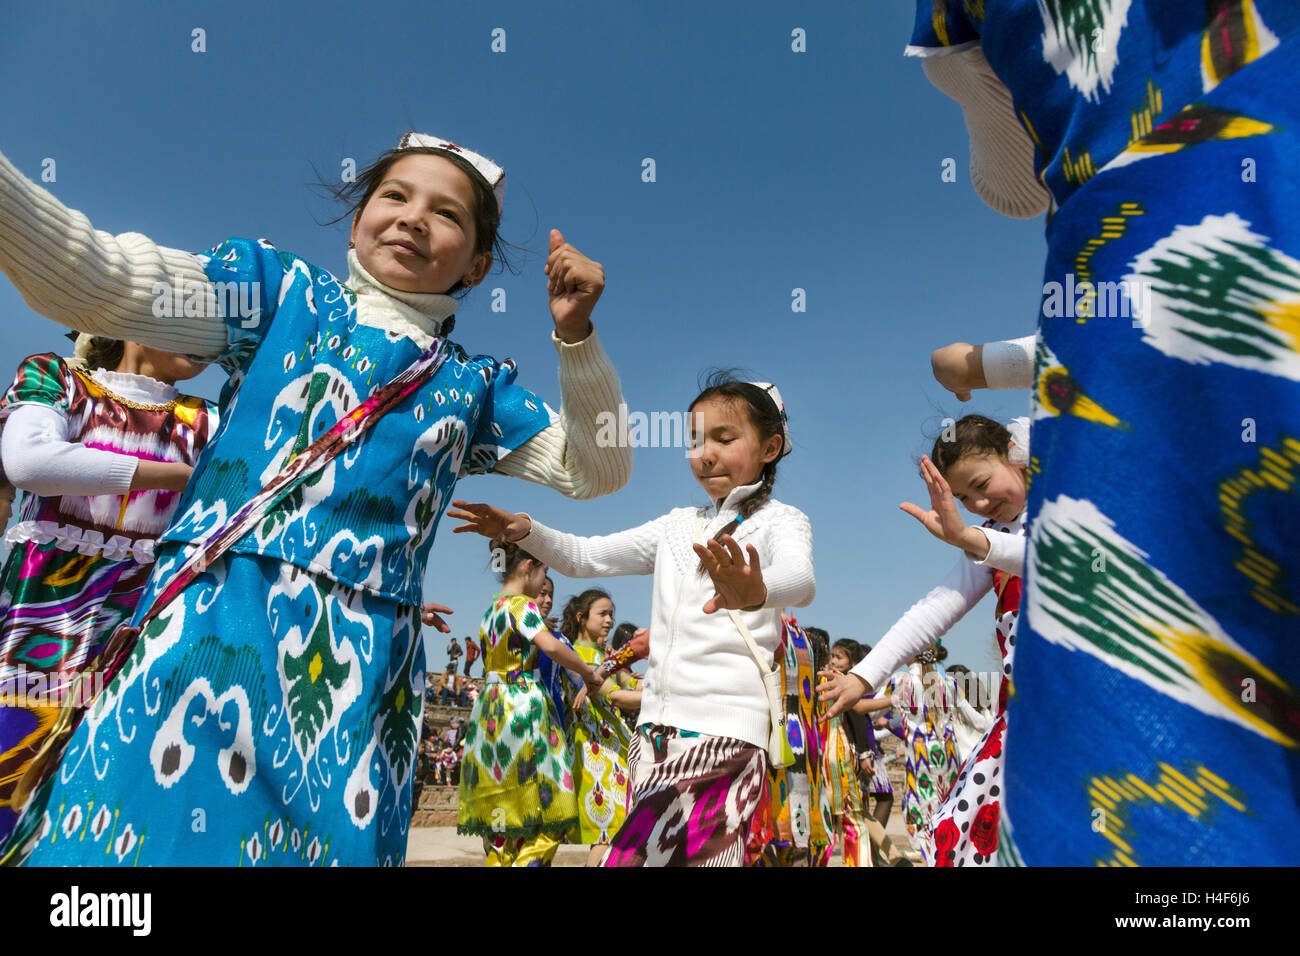 Ragazze Danza tradizionale danza orientale durante la celebrazione del Navruz in un paesino della Repubblica del Tagikistan Foto Stock